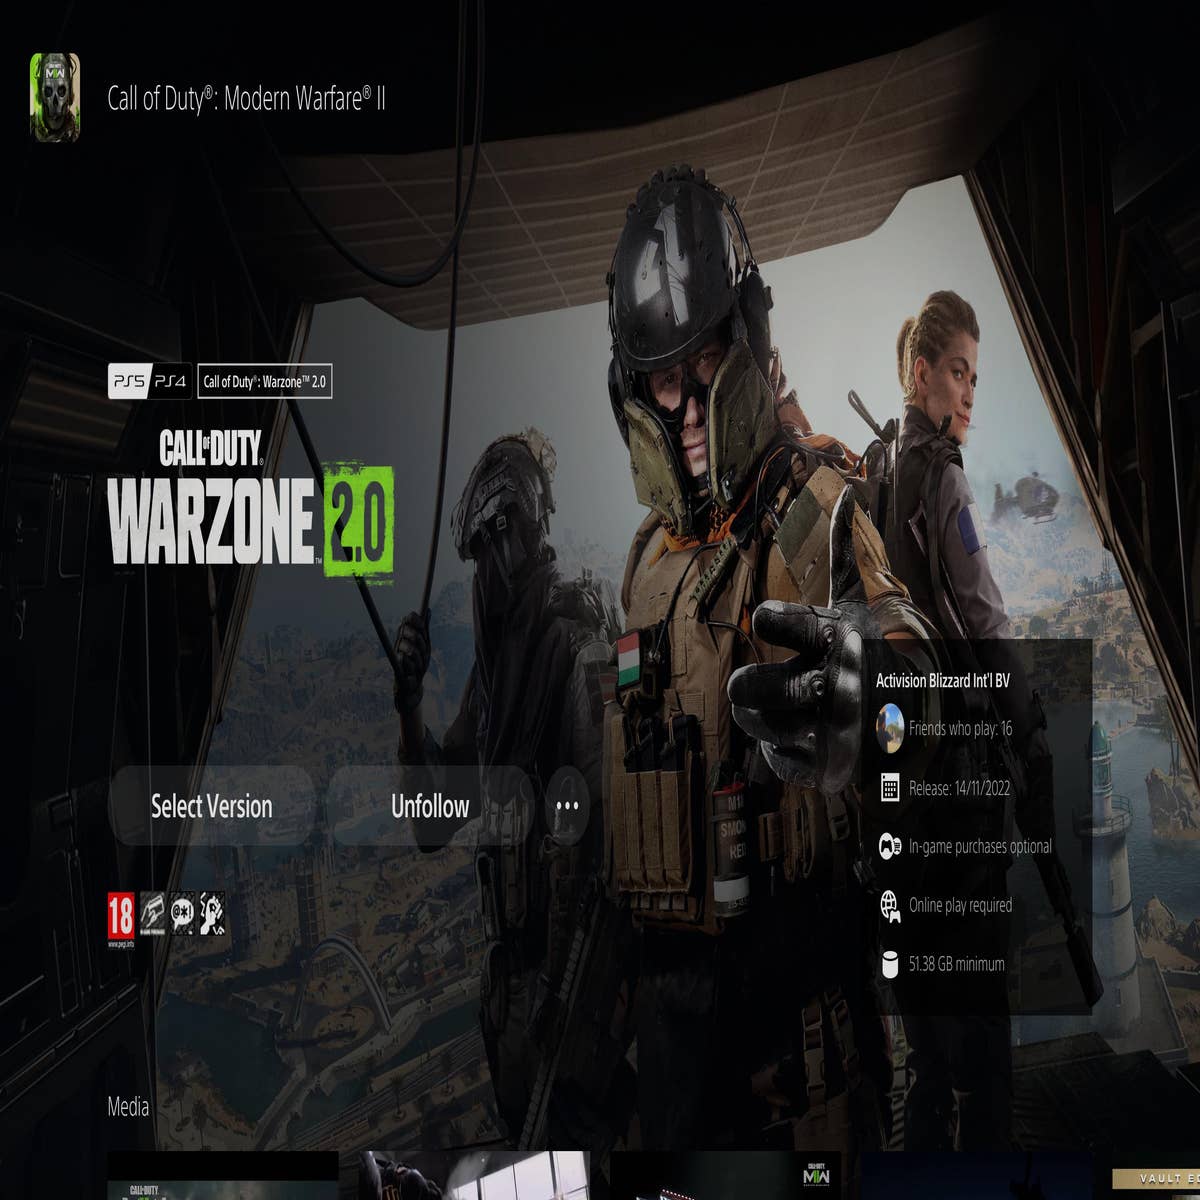 Is Modern Warfare 2 on PS4?